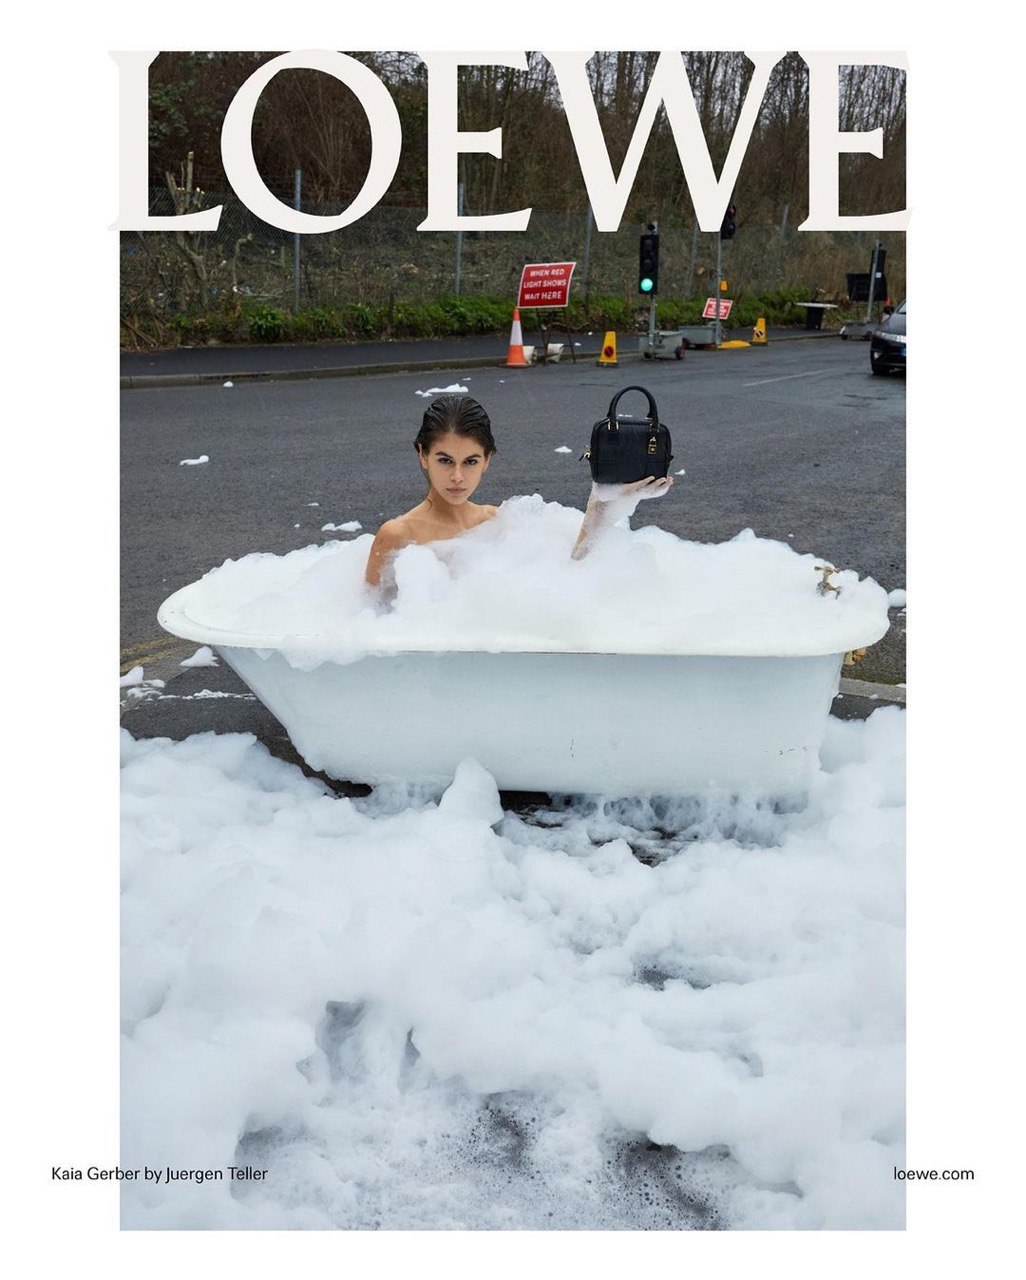 В новой кампании Loewe снялись Энтони Хопкинс и Кайя Гербер